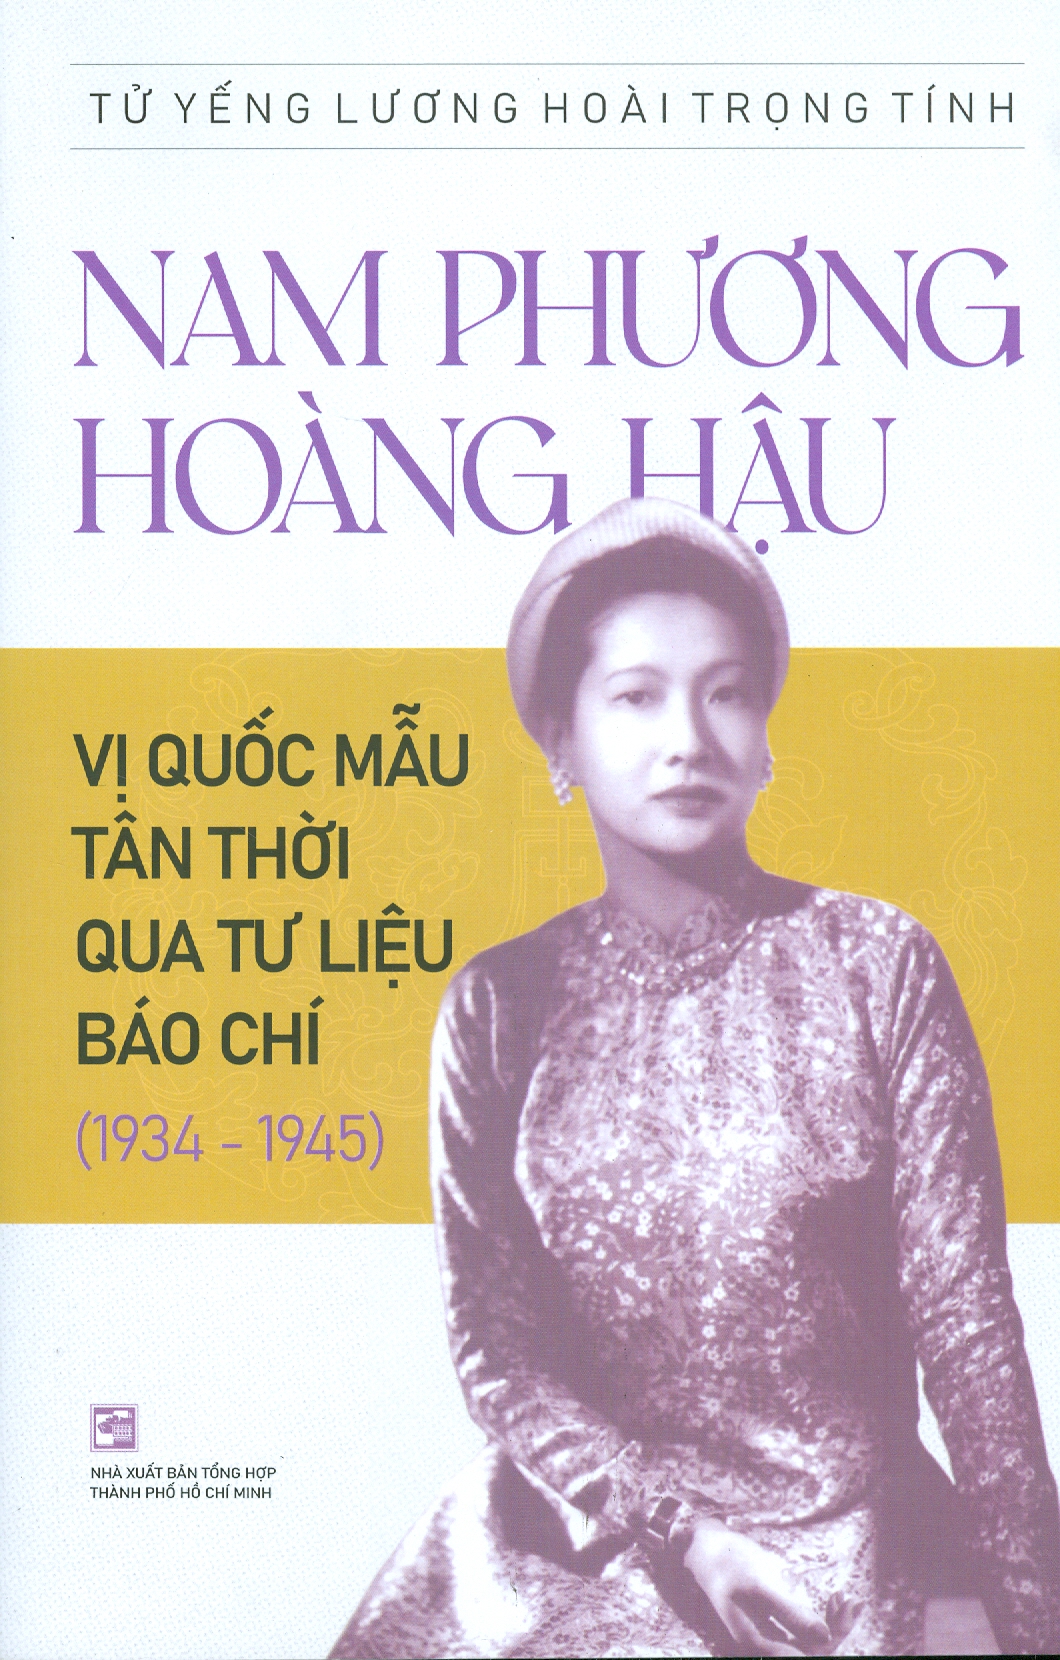 Nam Phương Hoàng Hậu: Vị Quốc Mẫu Tân Thời Qua Tư Liệu Báo Chí (1934 - 1945)